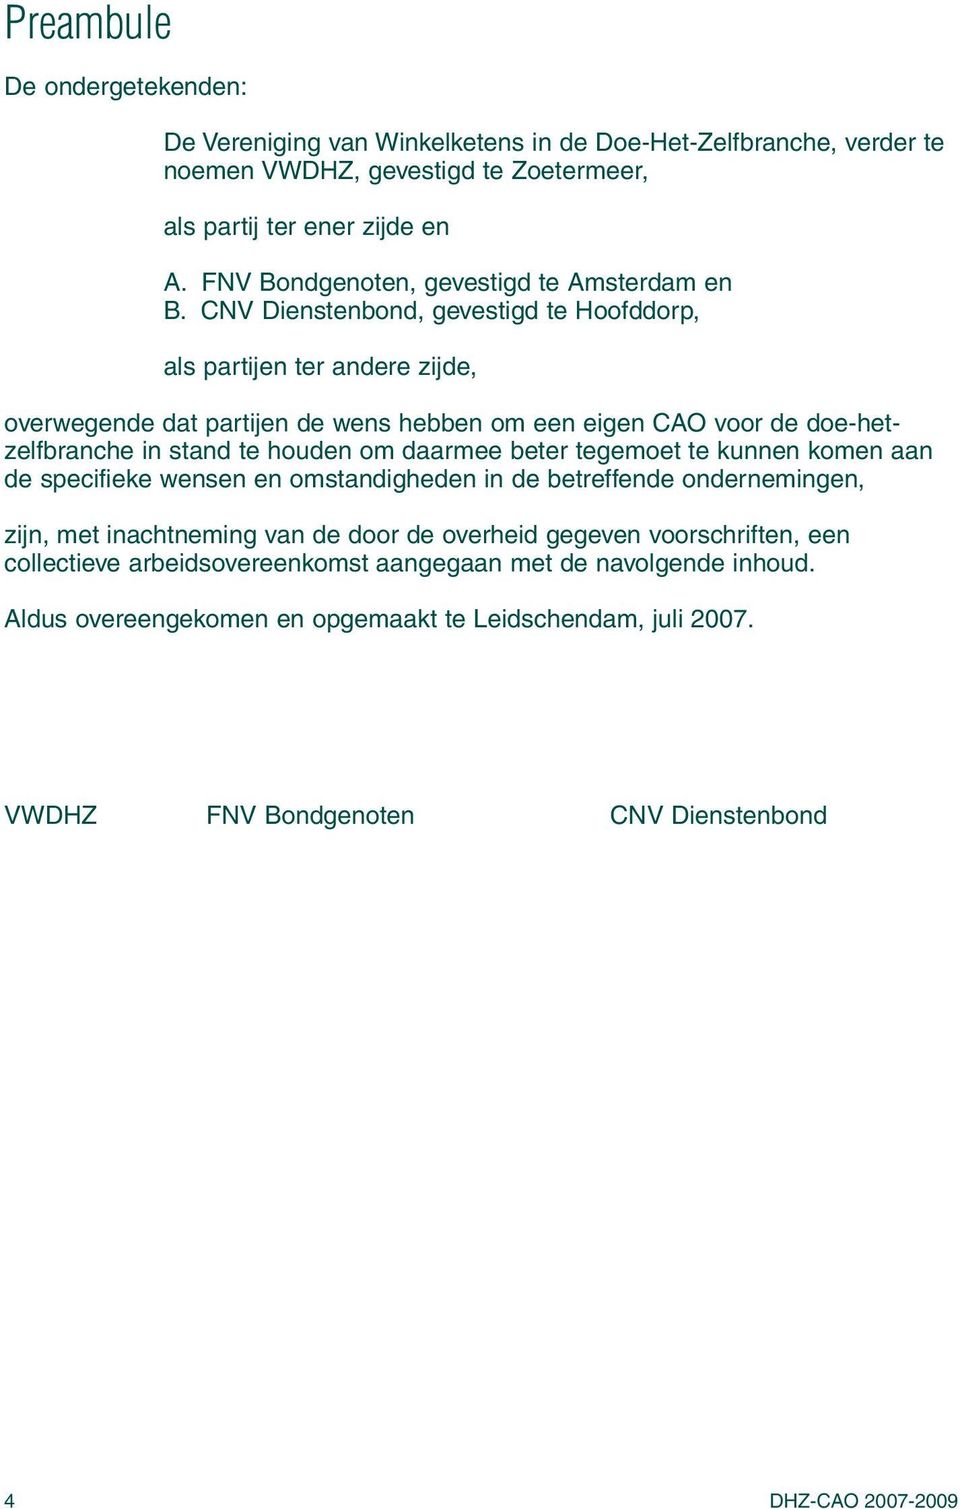 CNV Dienstenbond, gevestigd te Hoofddorp, als partijen ter andere zijde, overwegende dat partijen de wens hebben om een eigen CAO voor de doe-hetzelfbranche in stand te houden om daarmee beter